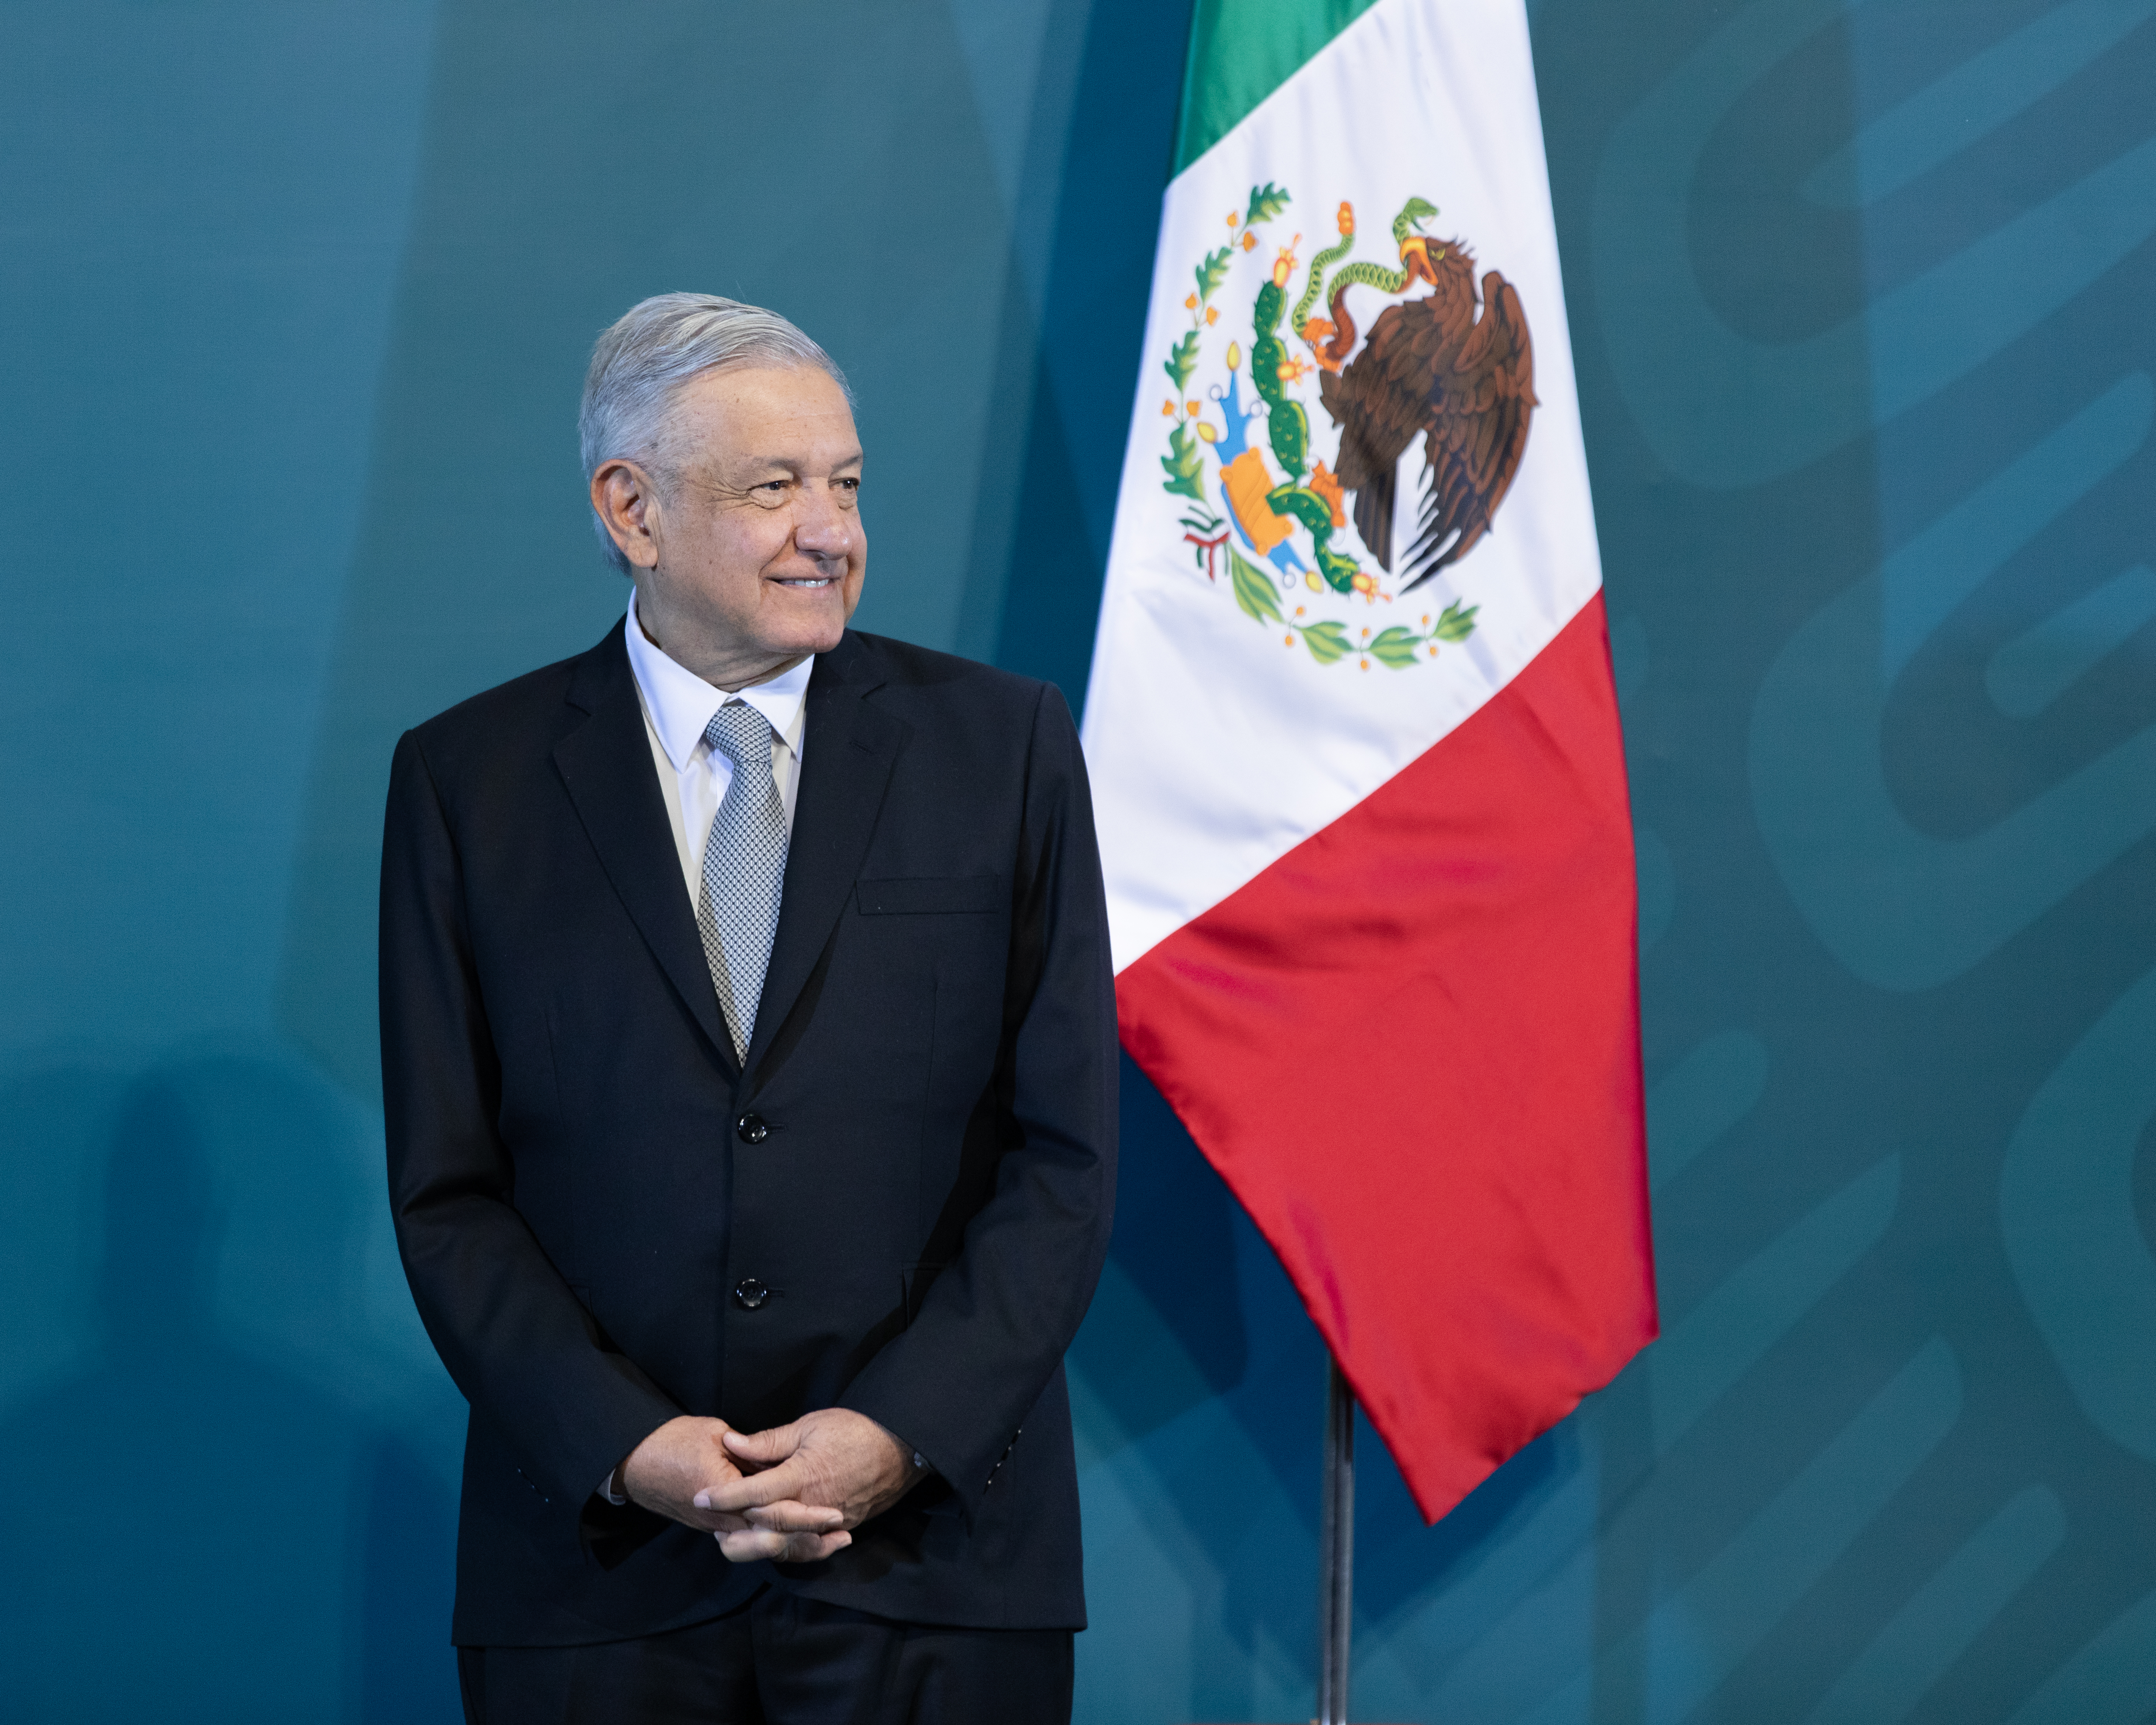 President Andres Manuel Lopez Obrador of Mexico (photo credit: Eneas De Troya/flickr)